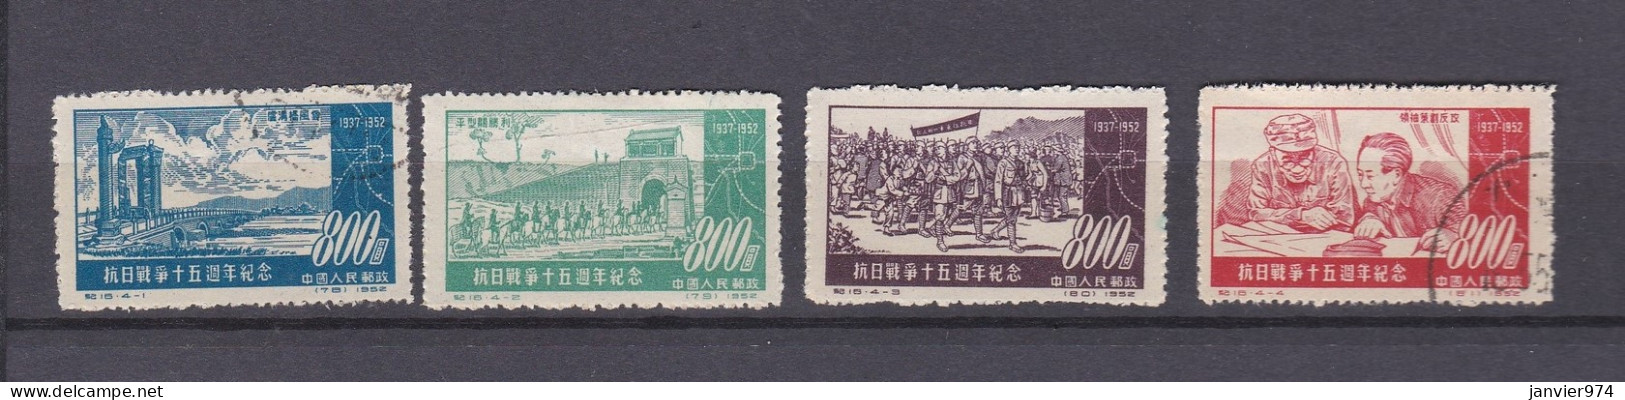 Chine 1952 La Serie Complete, Anniversaire De La Fin De La Guerre Contre Le Japon, 4 Timbres . 180 à 183 - Gebraucht